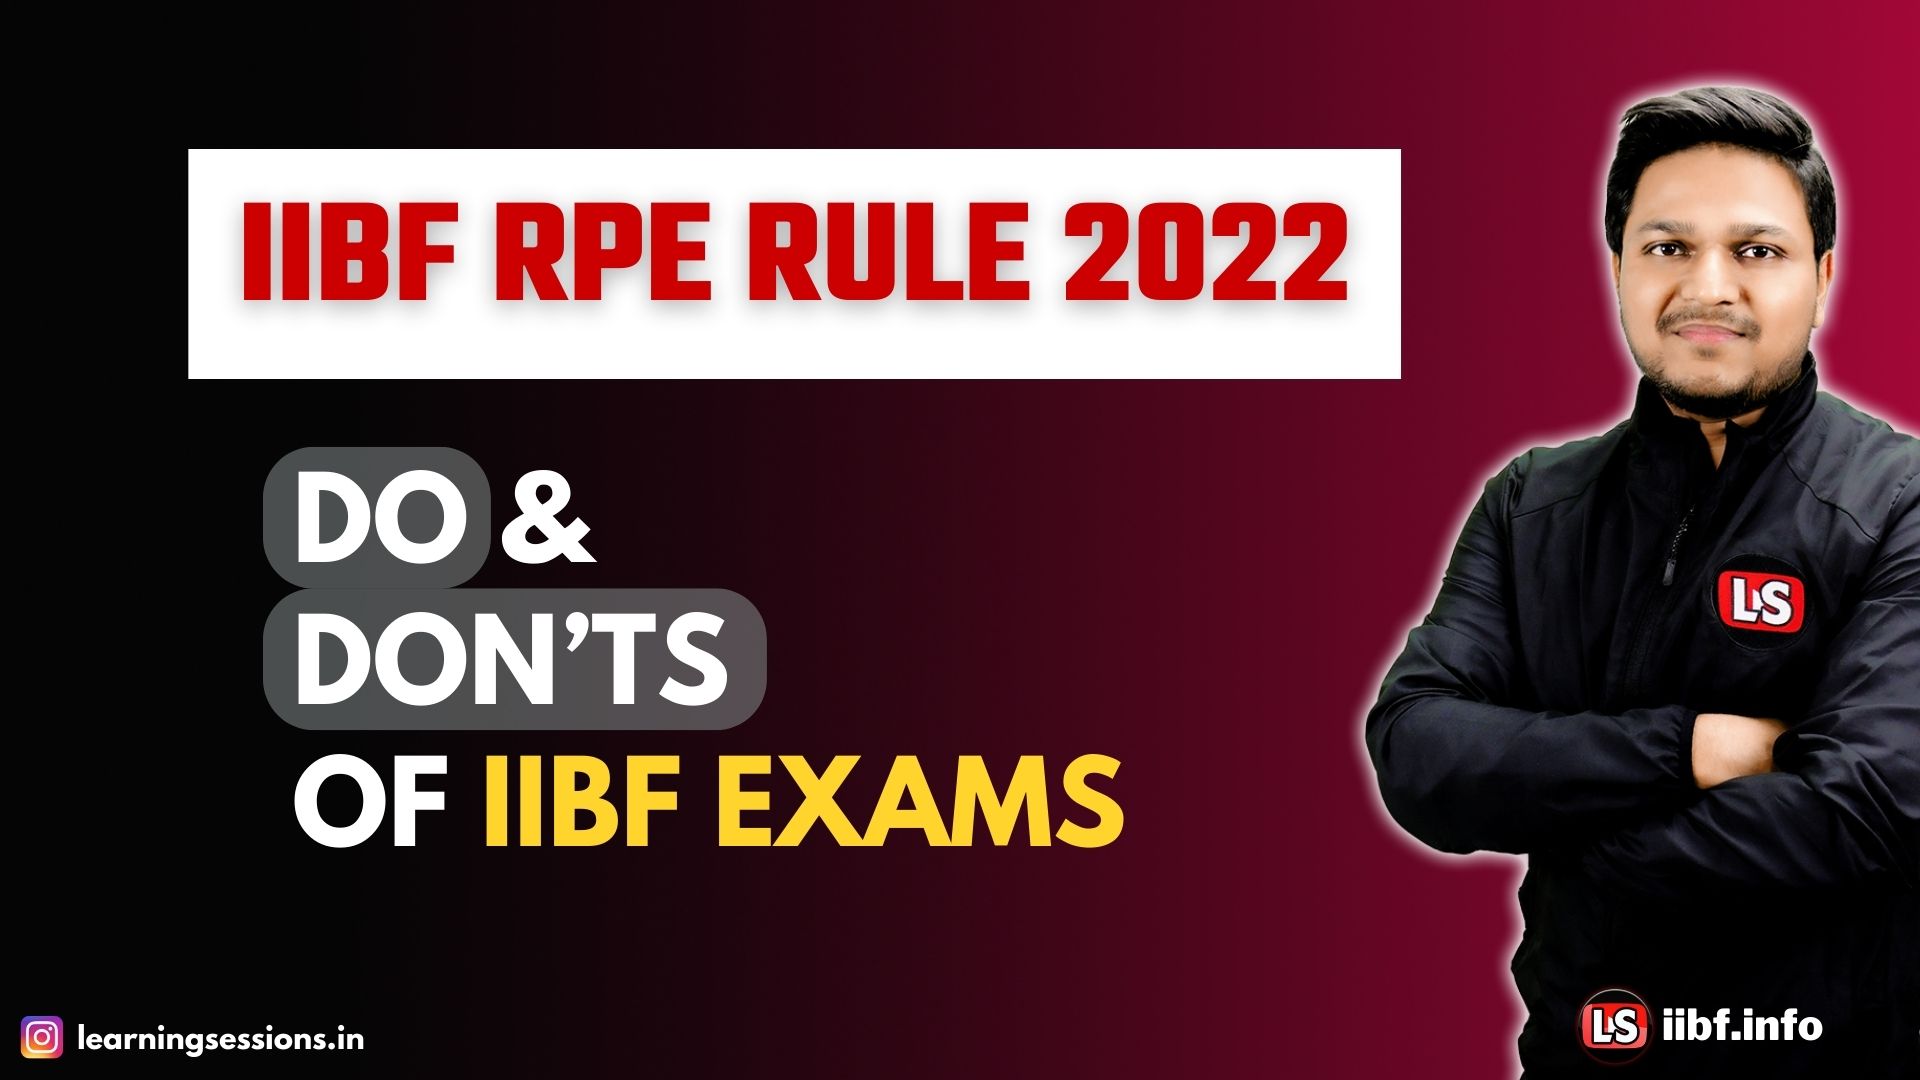 IIBF RPE RULES 2022 | DO & DON’TS OF IIBF EXAMS